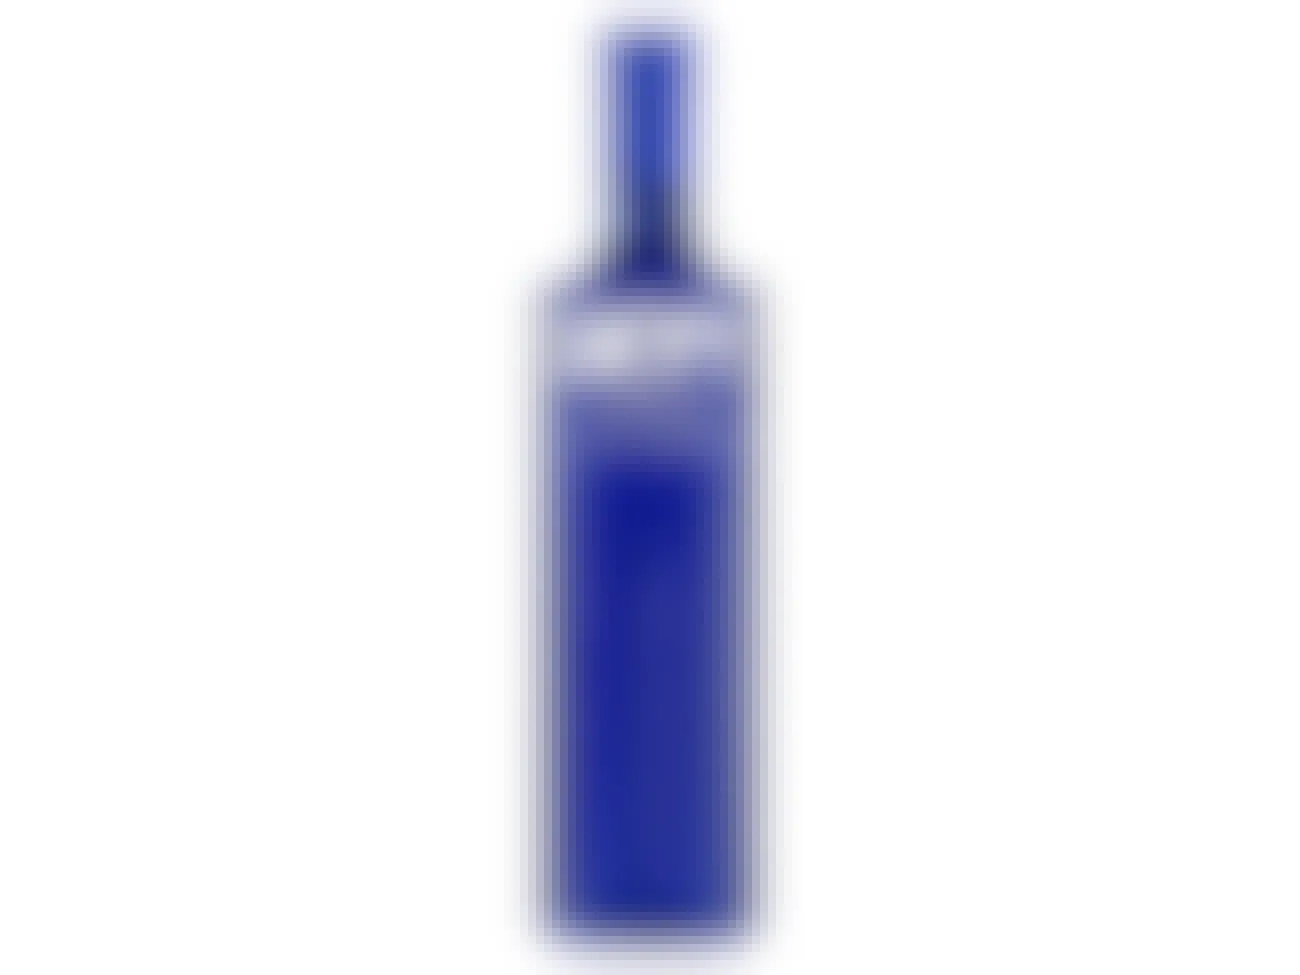 best cheap vodkas - skyy 80 proof vodka bottle